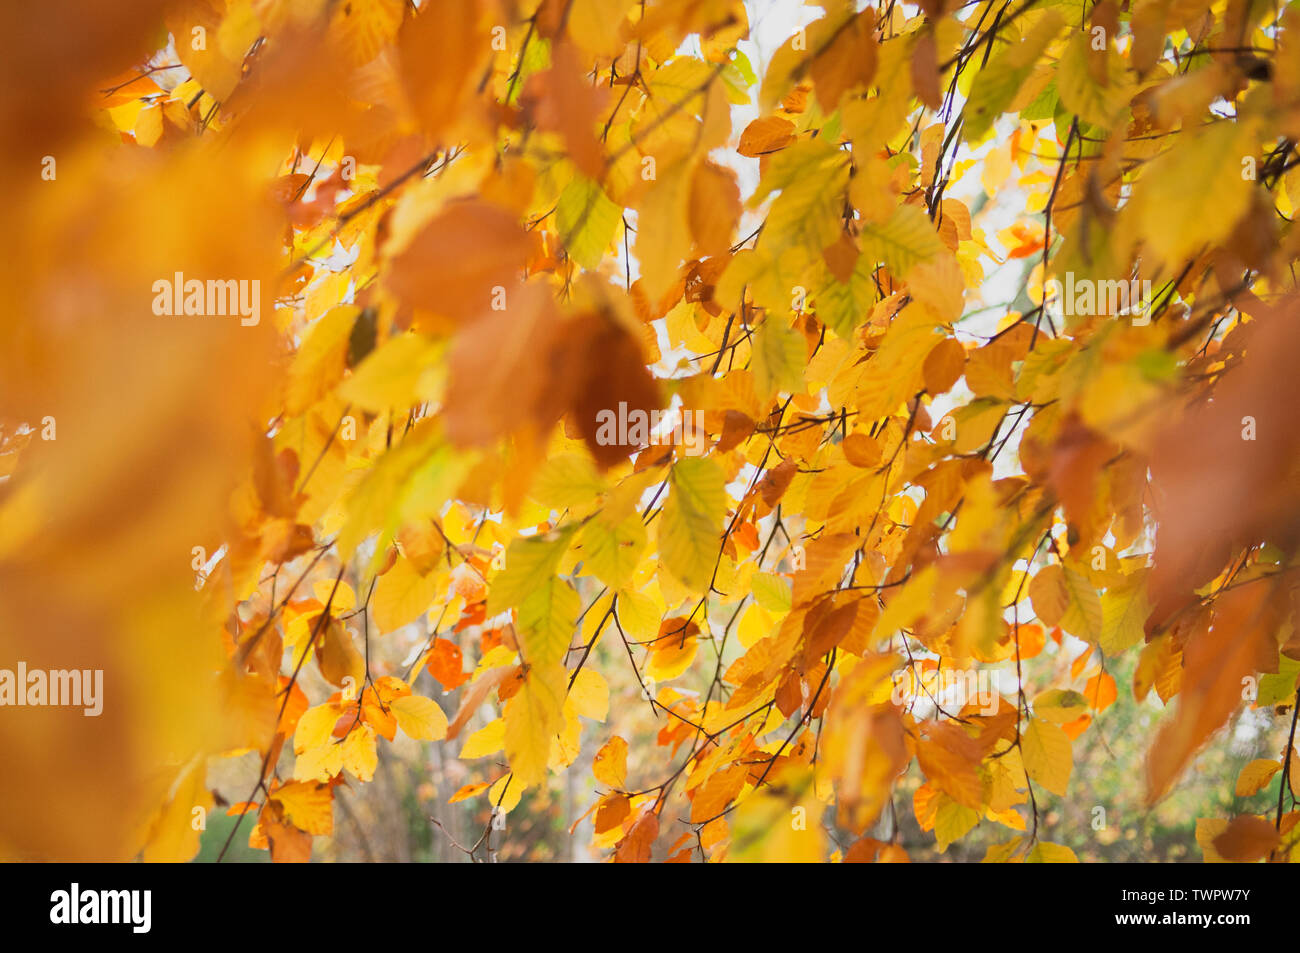 Autumn beech leaves. Stock Photo